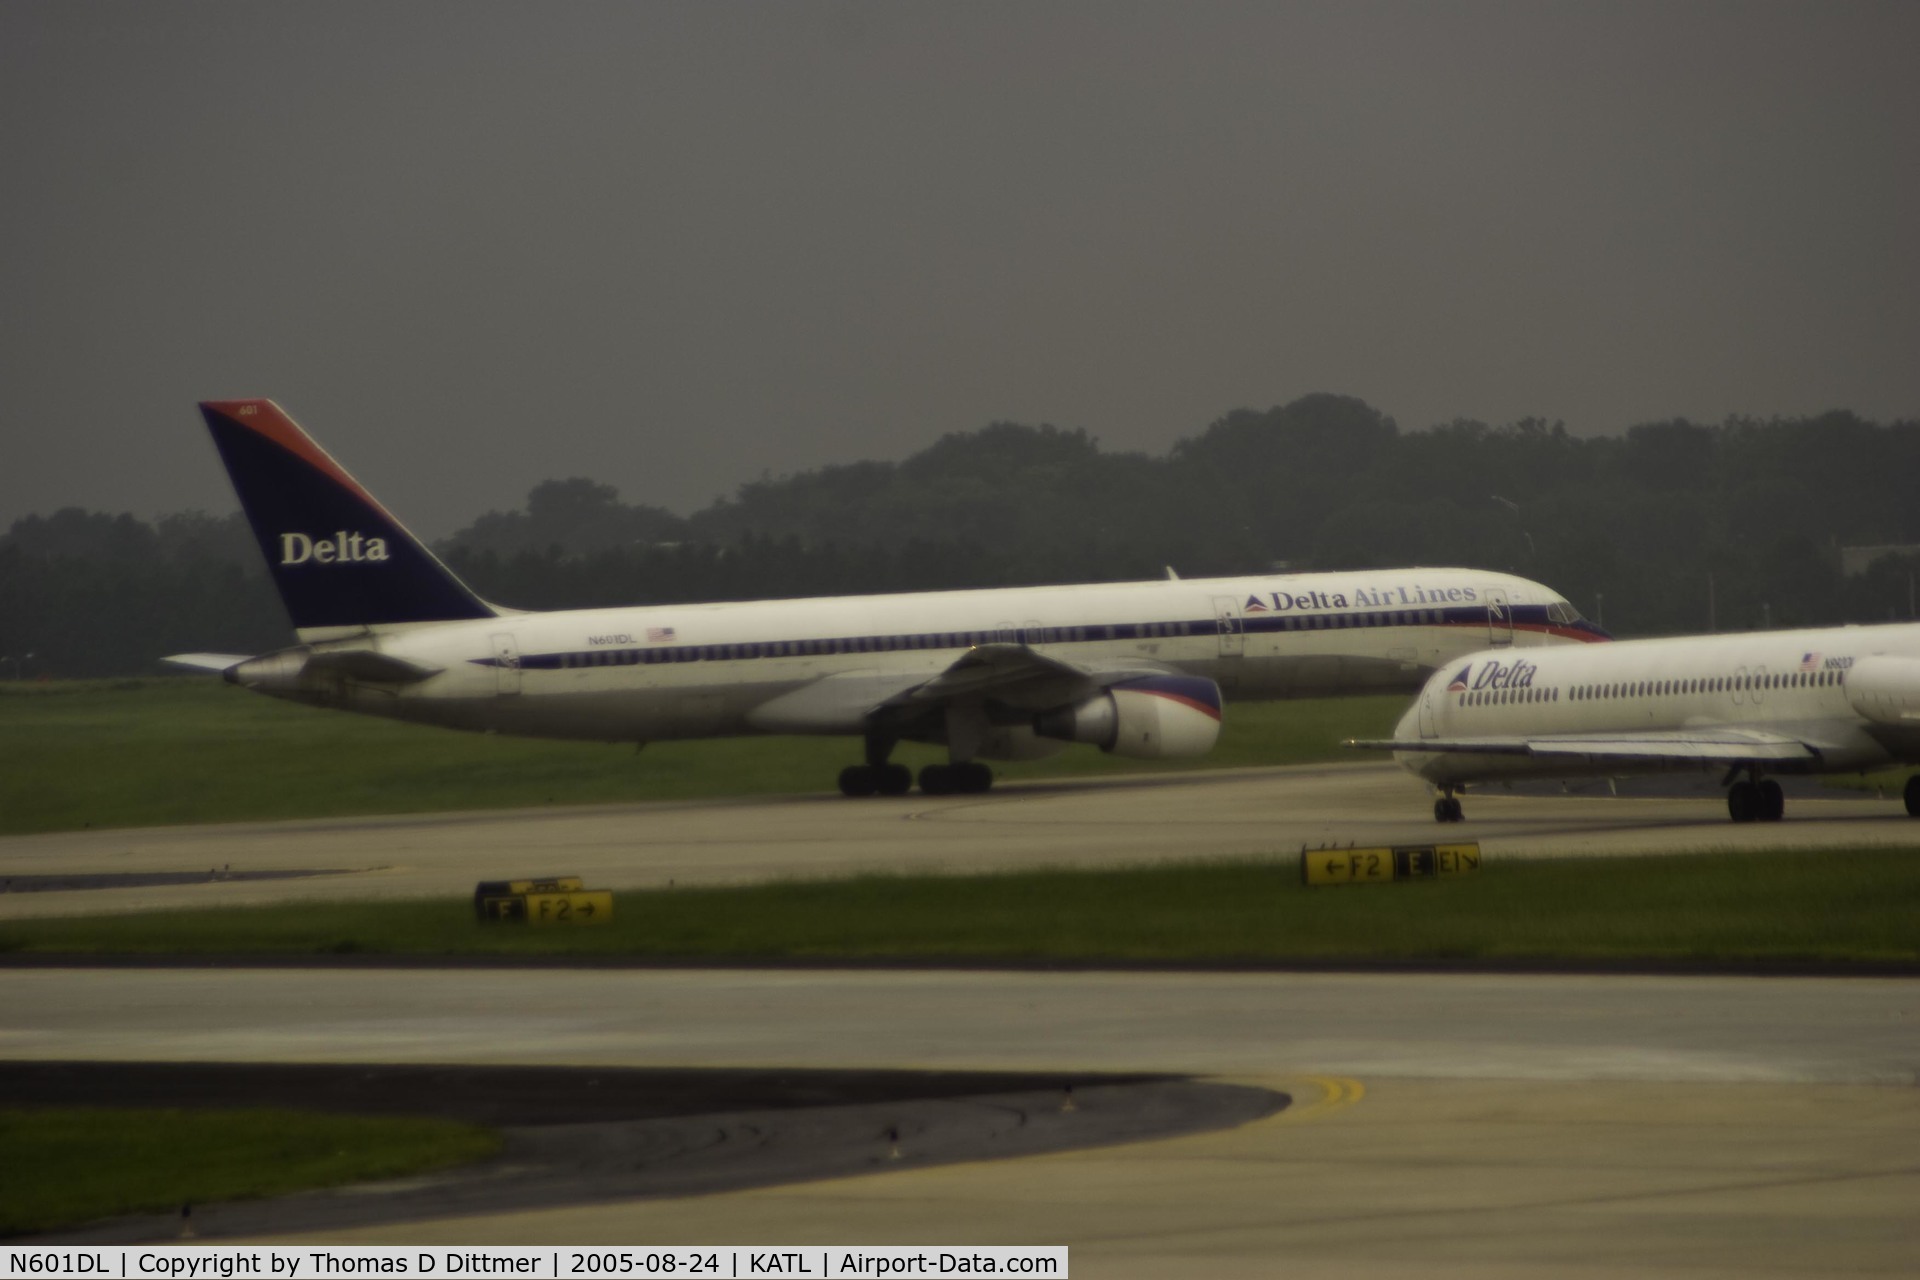 N601DL, 1985 Boeing 757-232 C/N 22808, Delta Airlines (N601DL) rolling down the runway